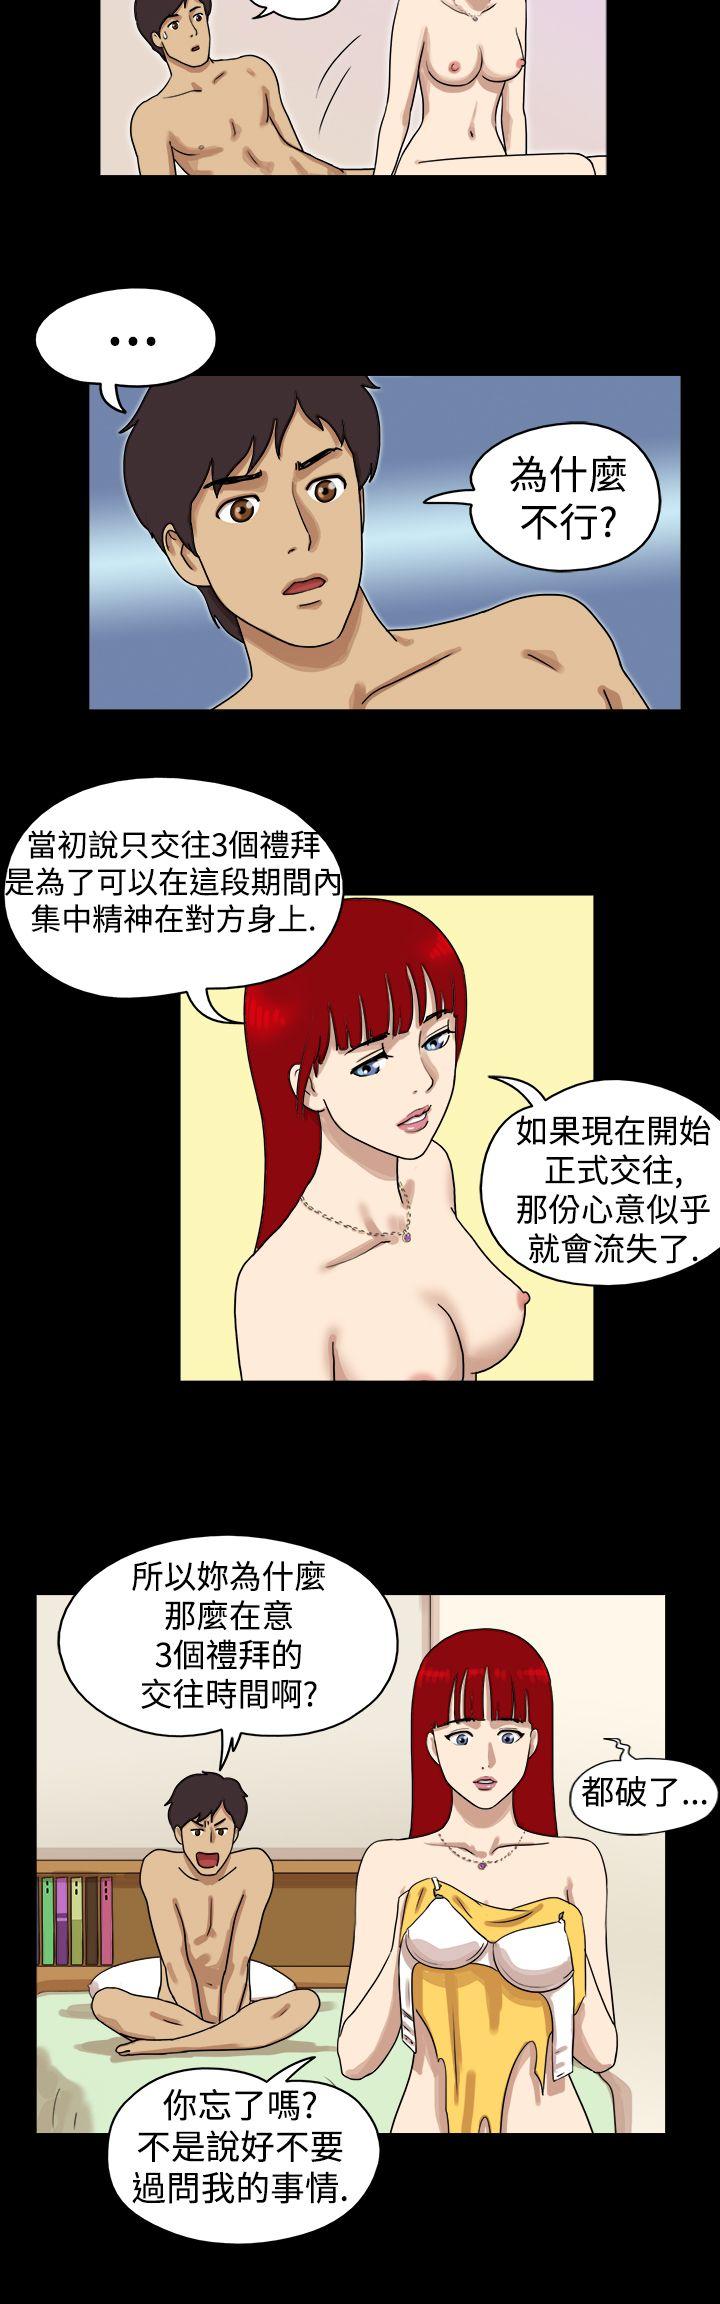 韩国污漫画 17種性幻想第一季 第20话 3